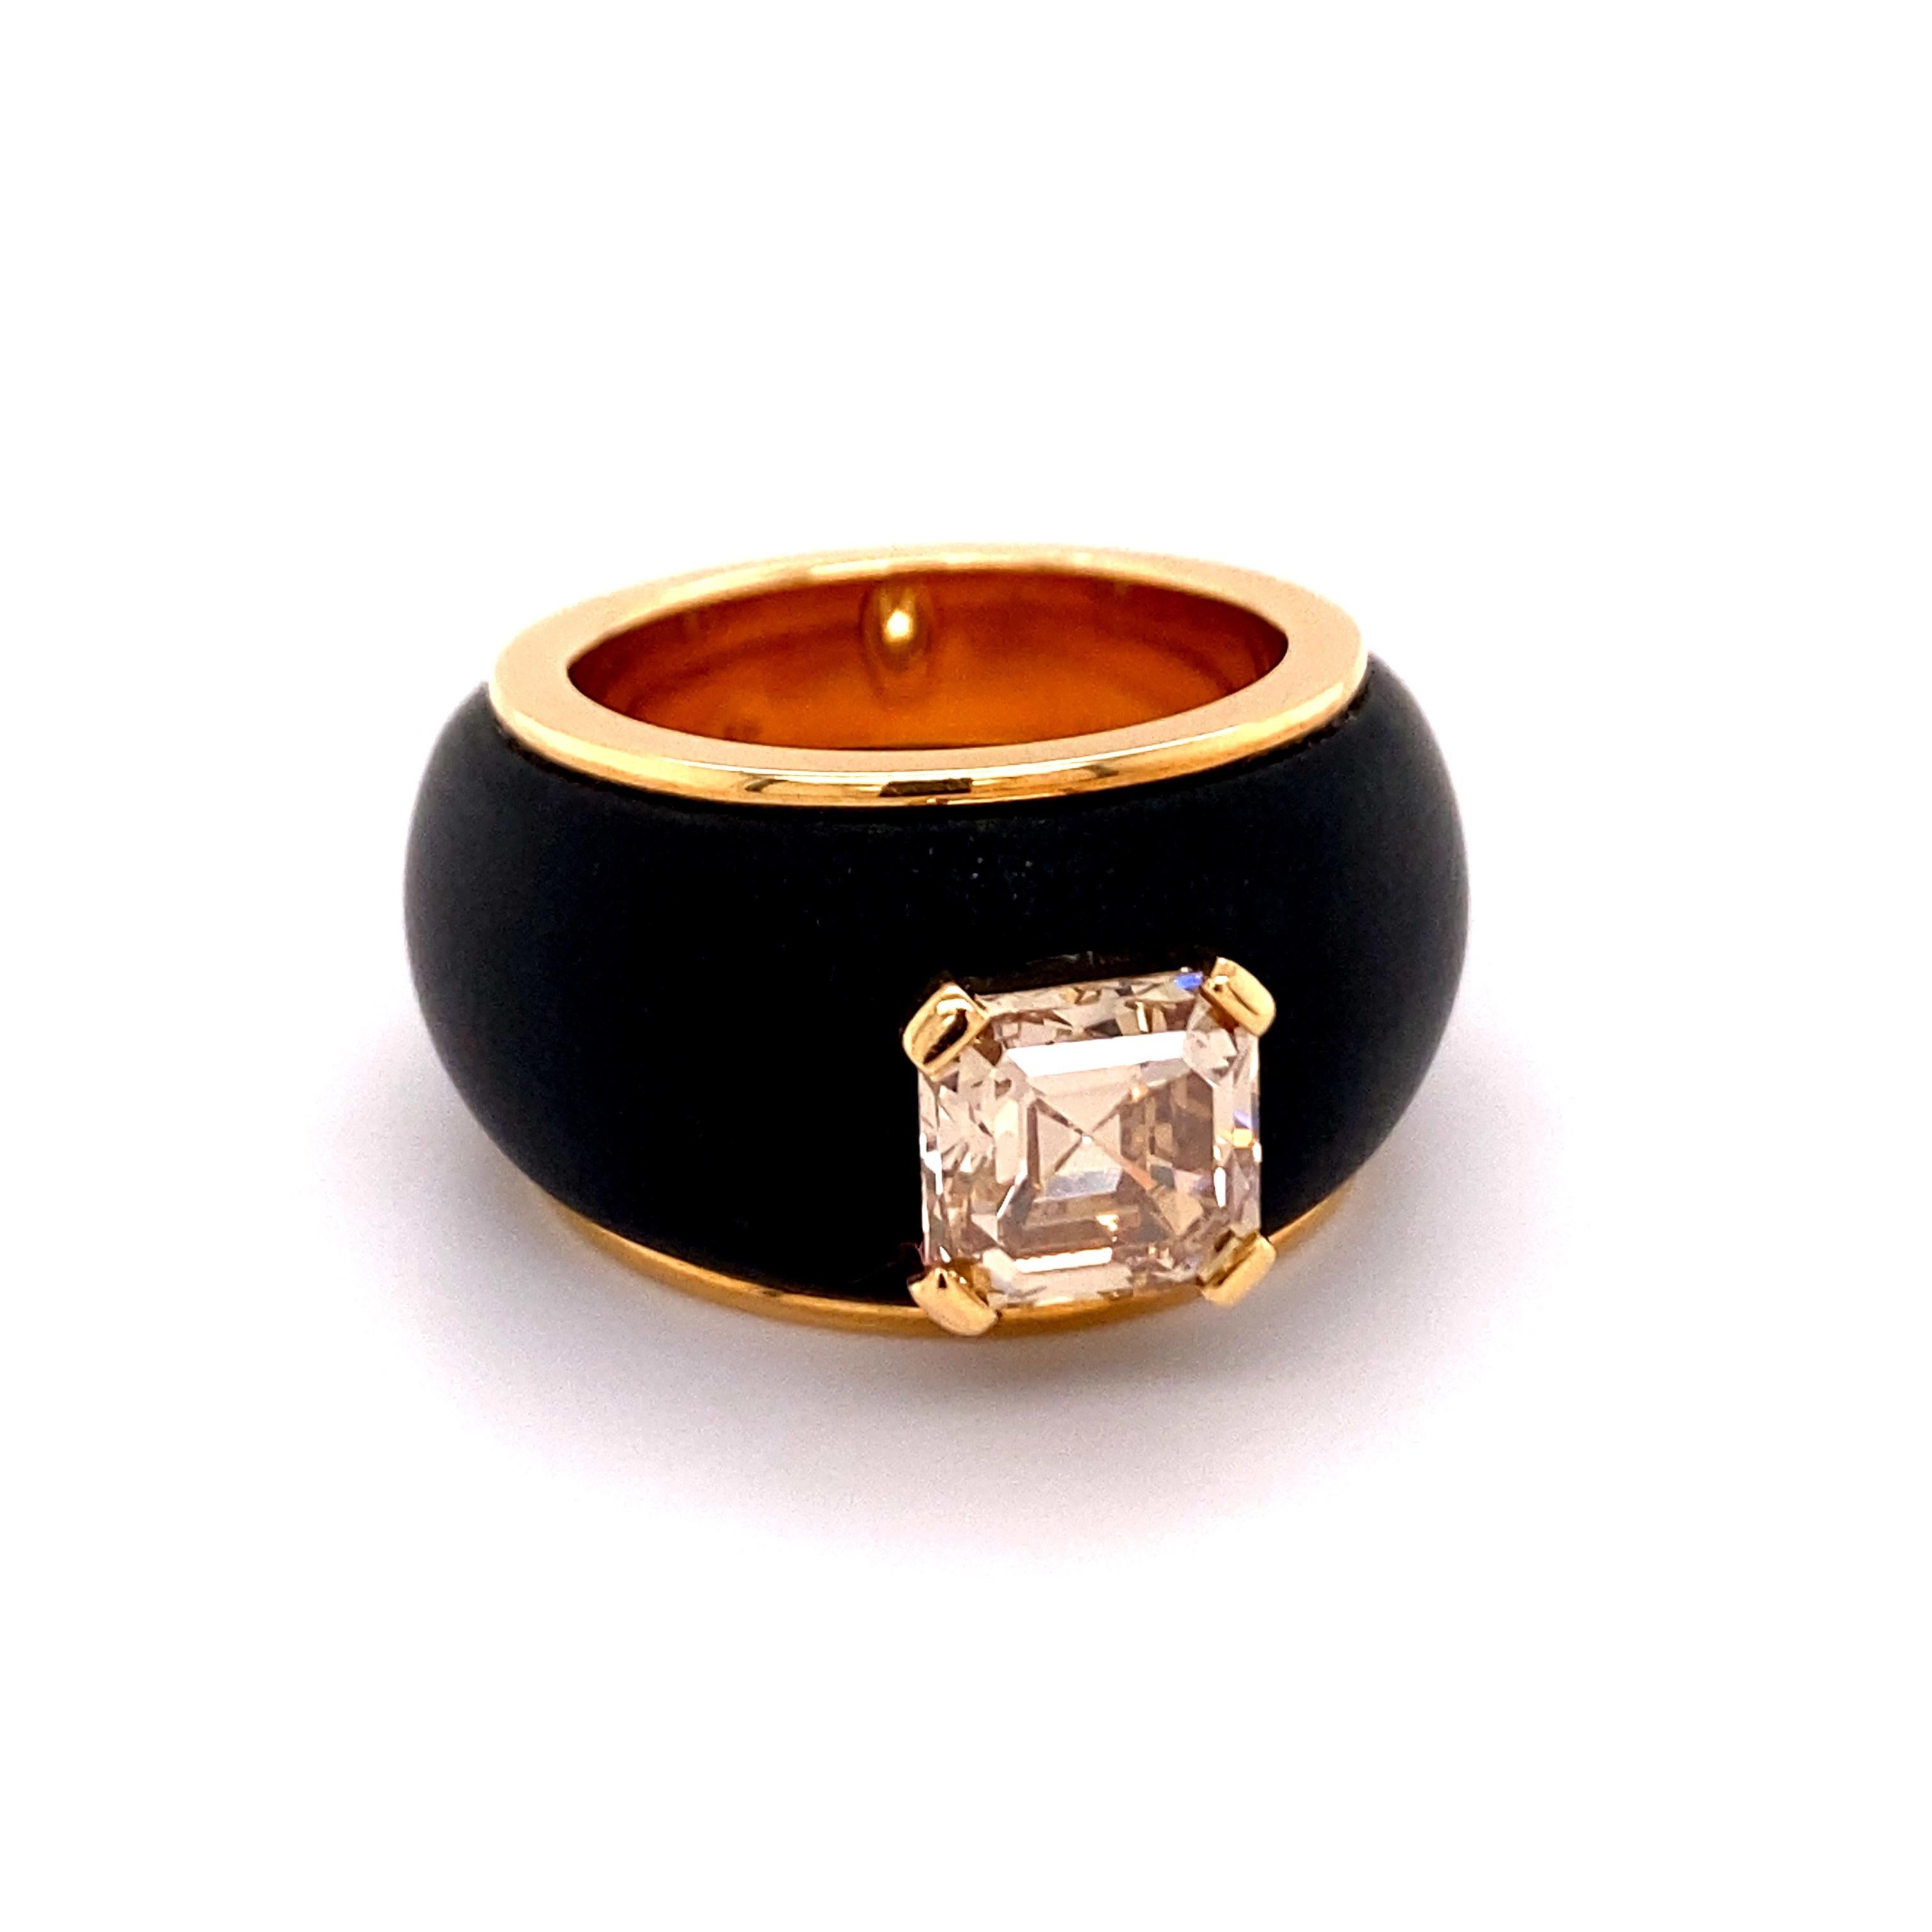 Cette bague séduit par son design simple et moderne.
Le diamant fantaisie brun clair taille Assher, d'un poids de 2,65 ct et de qualité si1, est certifié par l'Institut suisse de gemmologie.
La taille Asscher a été créée en 1902 par le petit-fils de